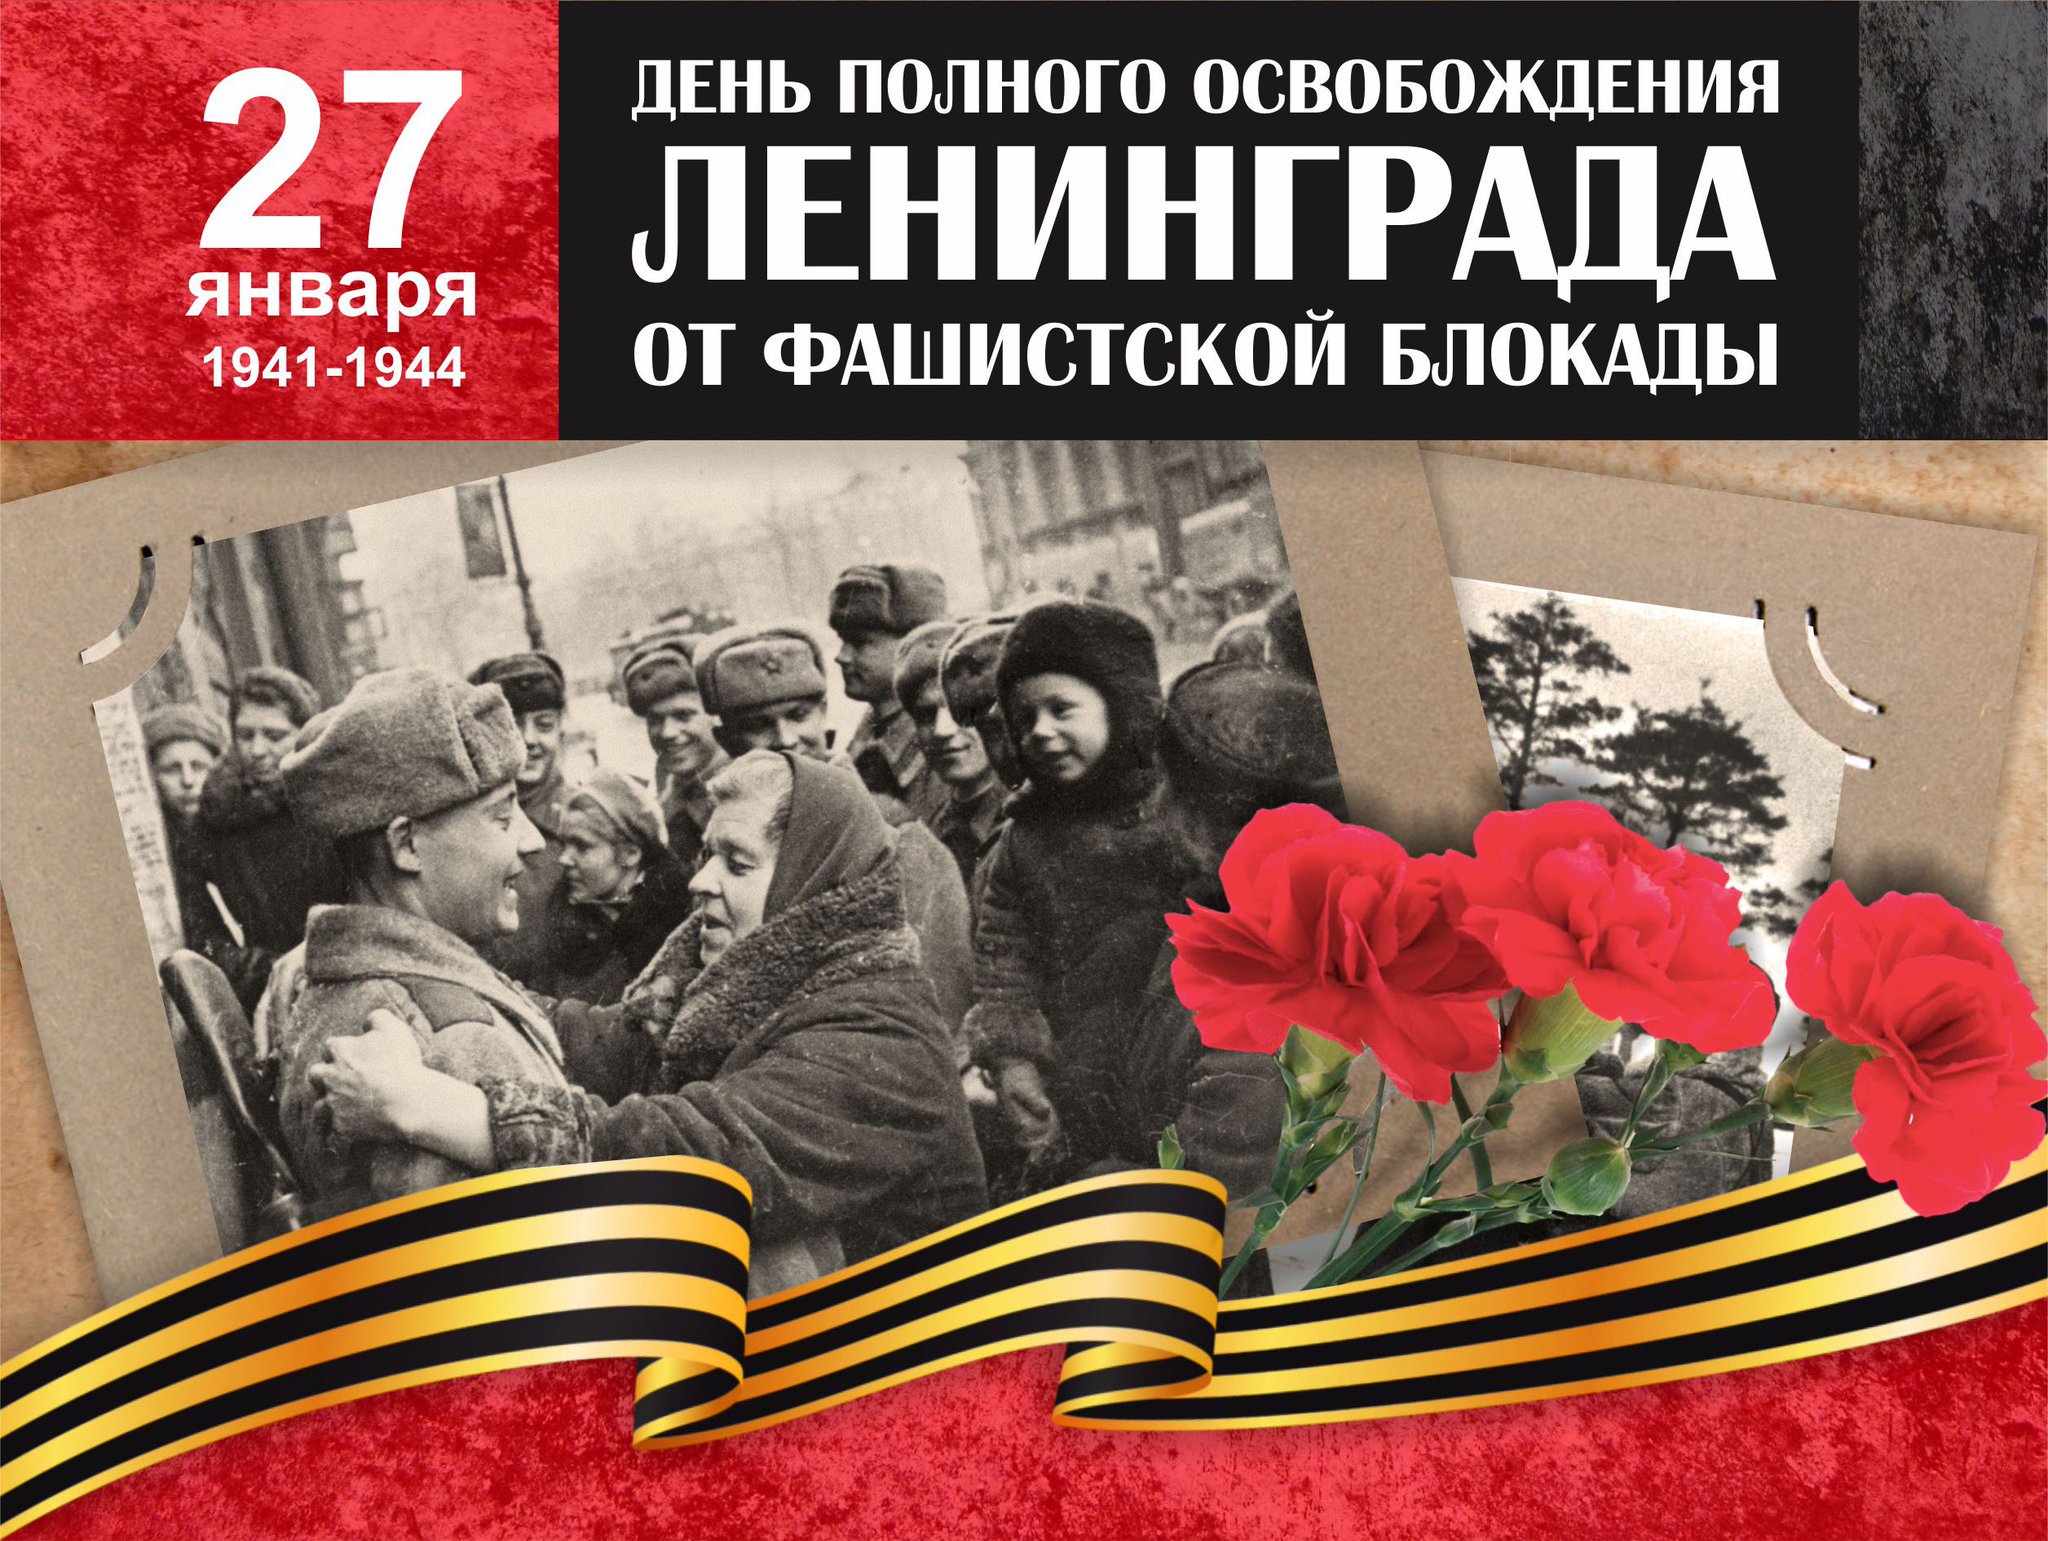 Освобождение Ленинграда 27 января 1944